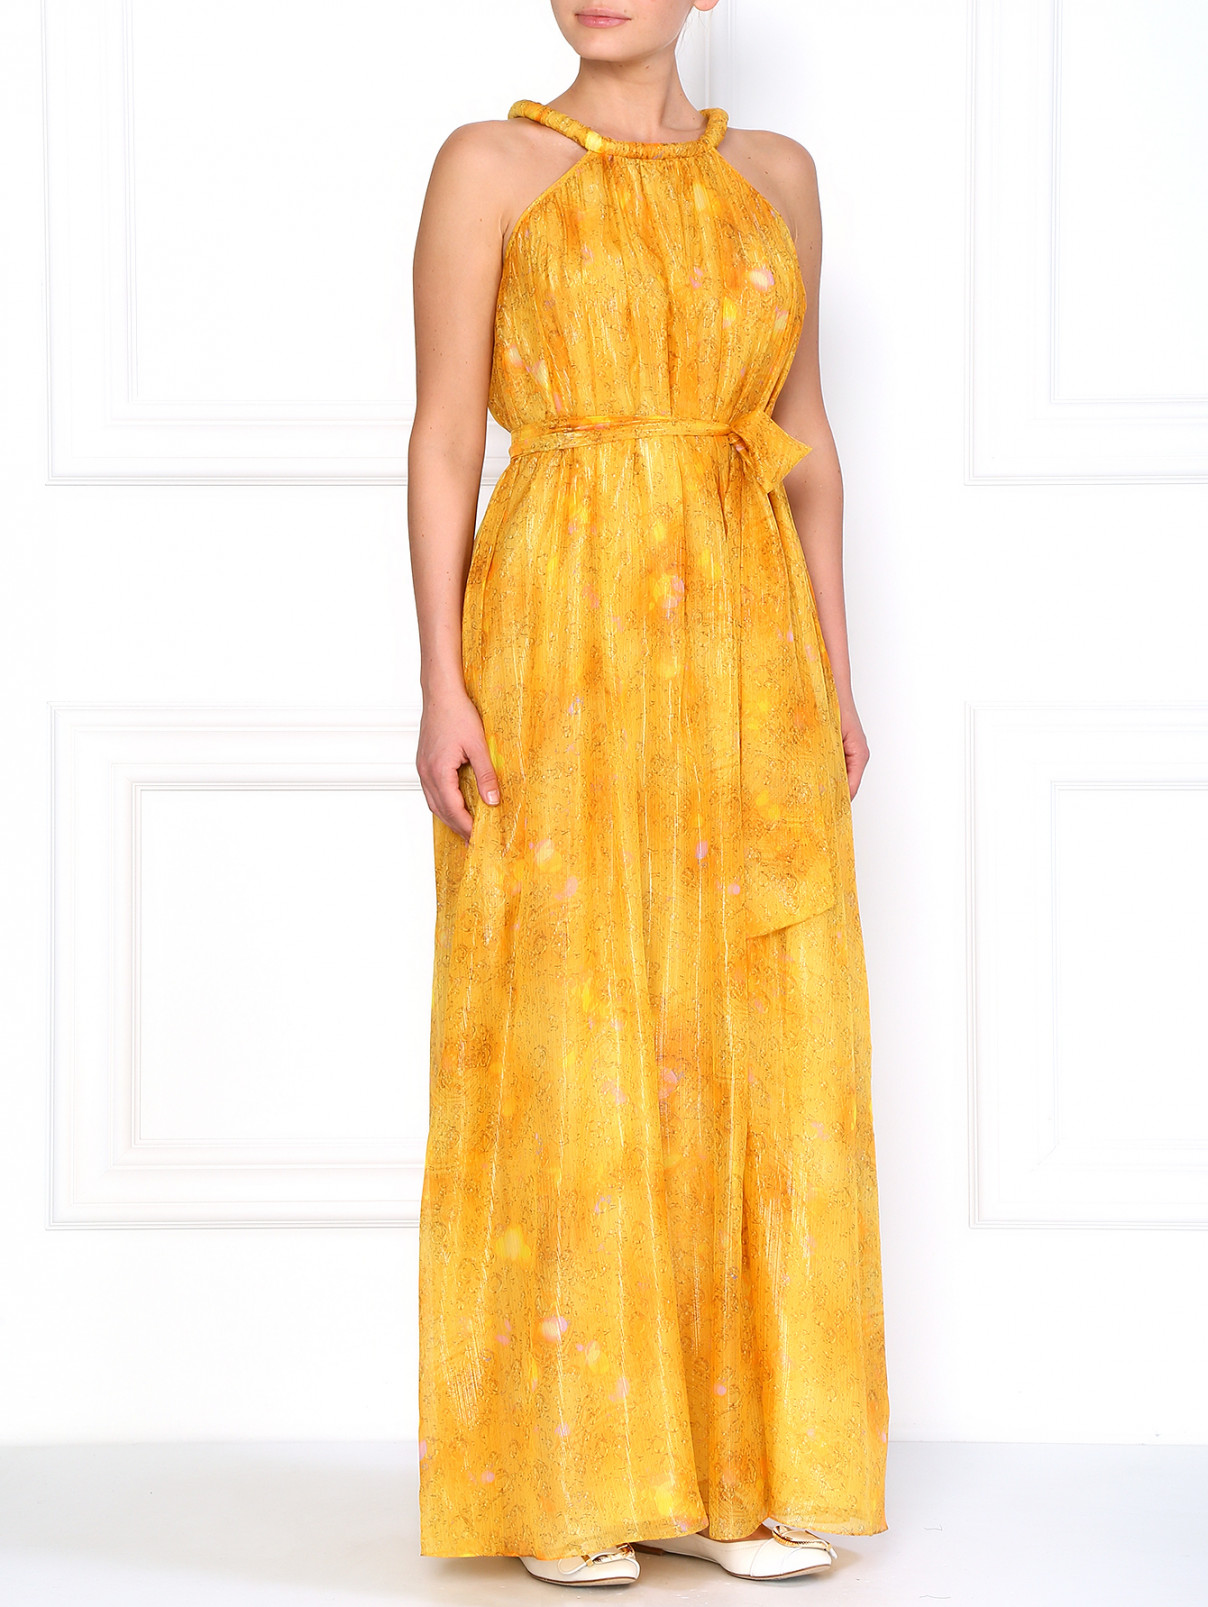 Шелковое платье свободного фасона A La Russe  –  Модель Общий вид  – Цвет:  Желтый